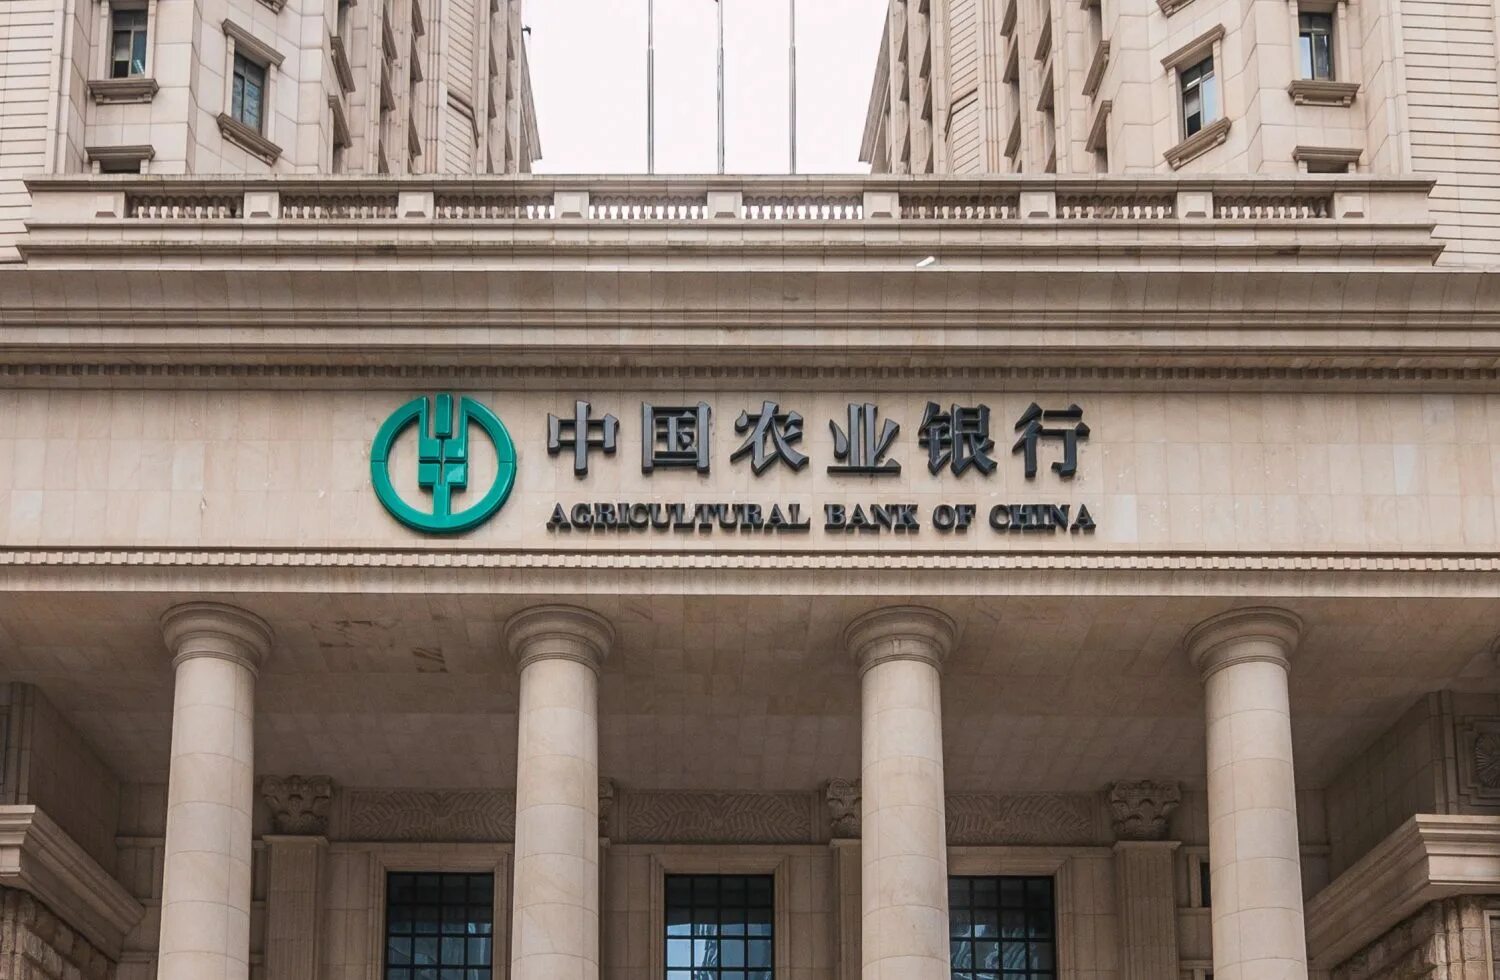 Бэнк оф сайт. Банк Китая (Bank of China). Сельскохозяйственный банк Китая. Банки развития Китая. Агрокульурный бан Китая.